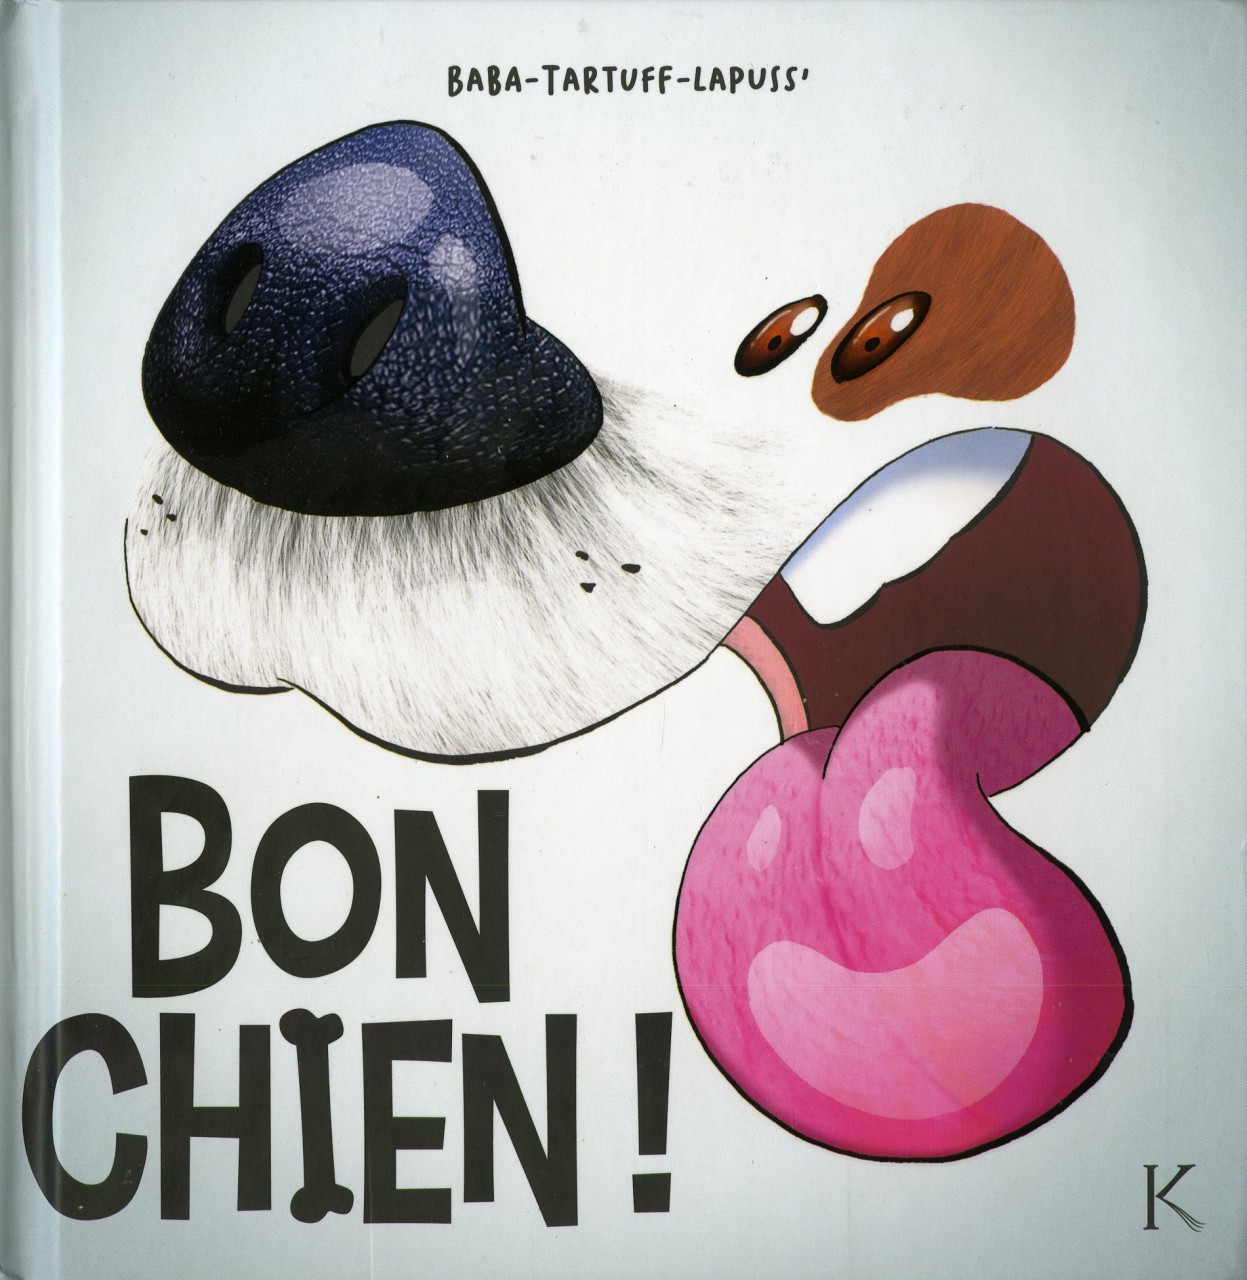 Première couverture livre "Bon Chien !" une tête de chien truffe noire et langue tirée